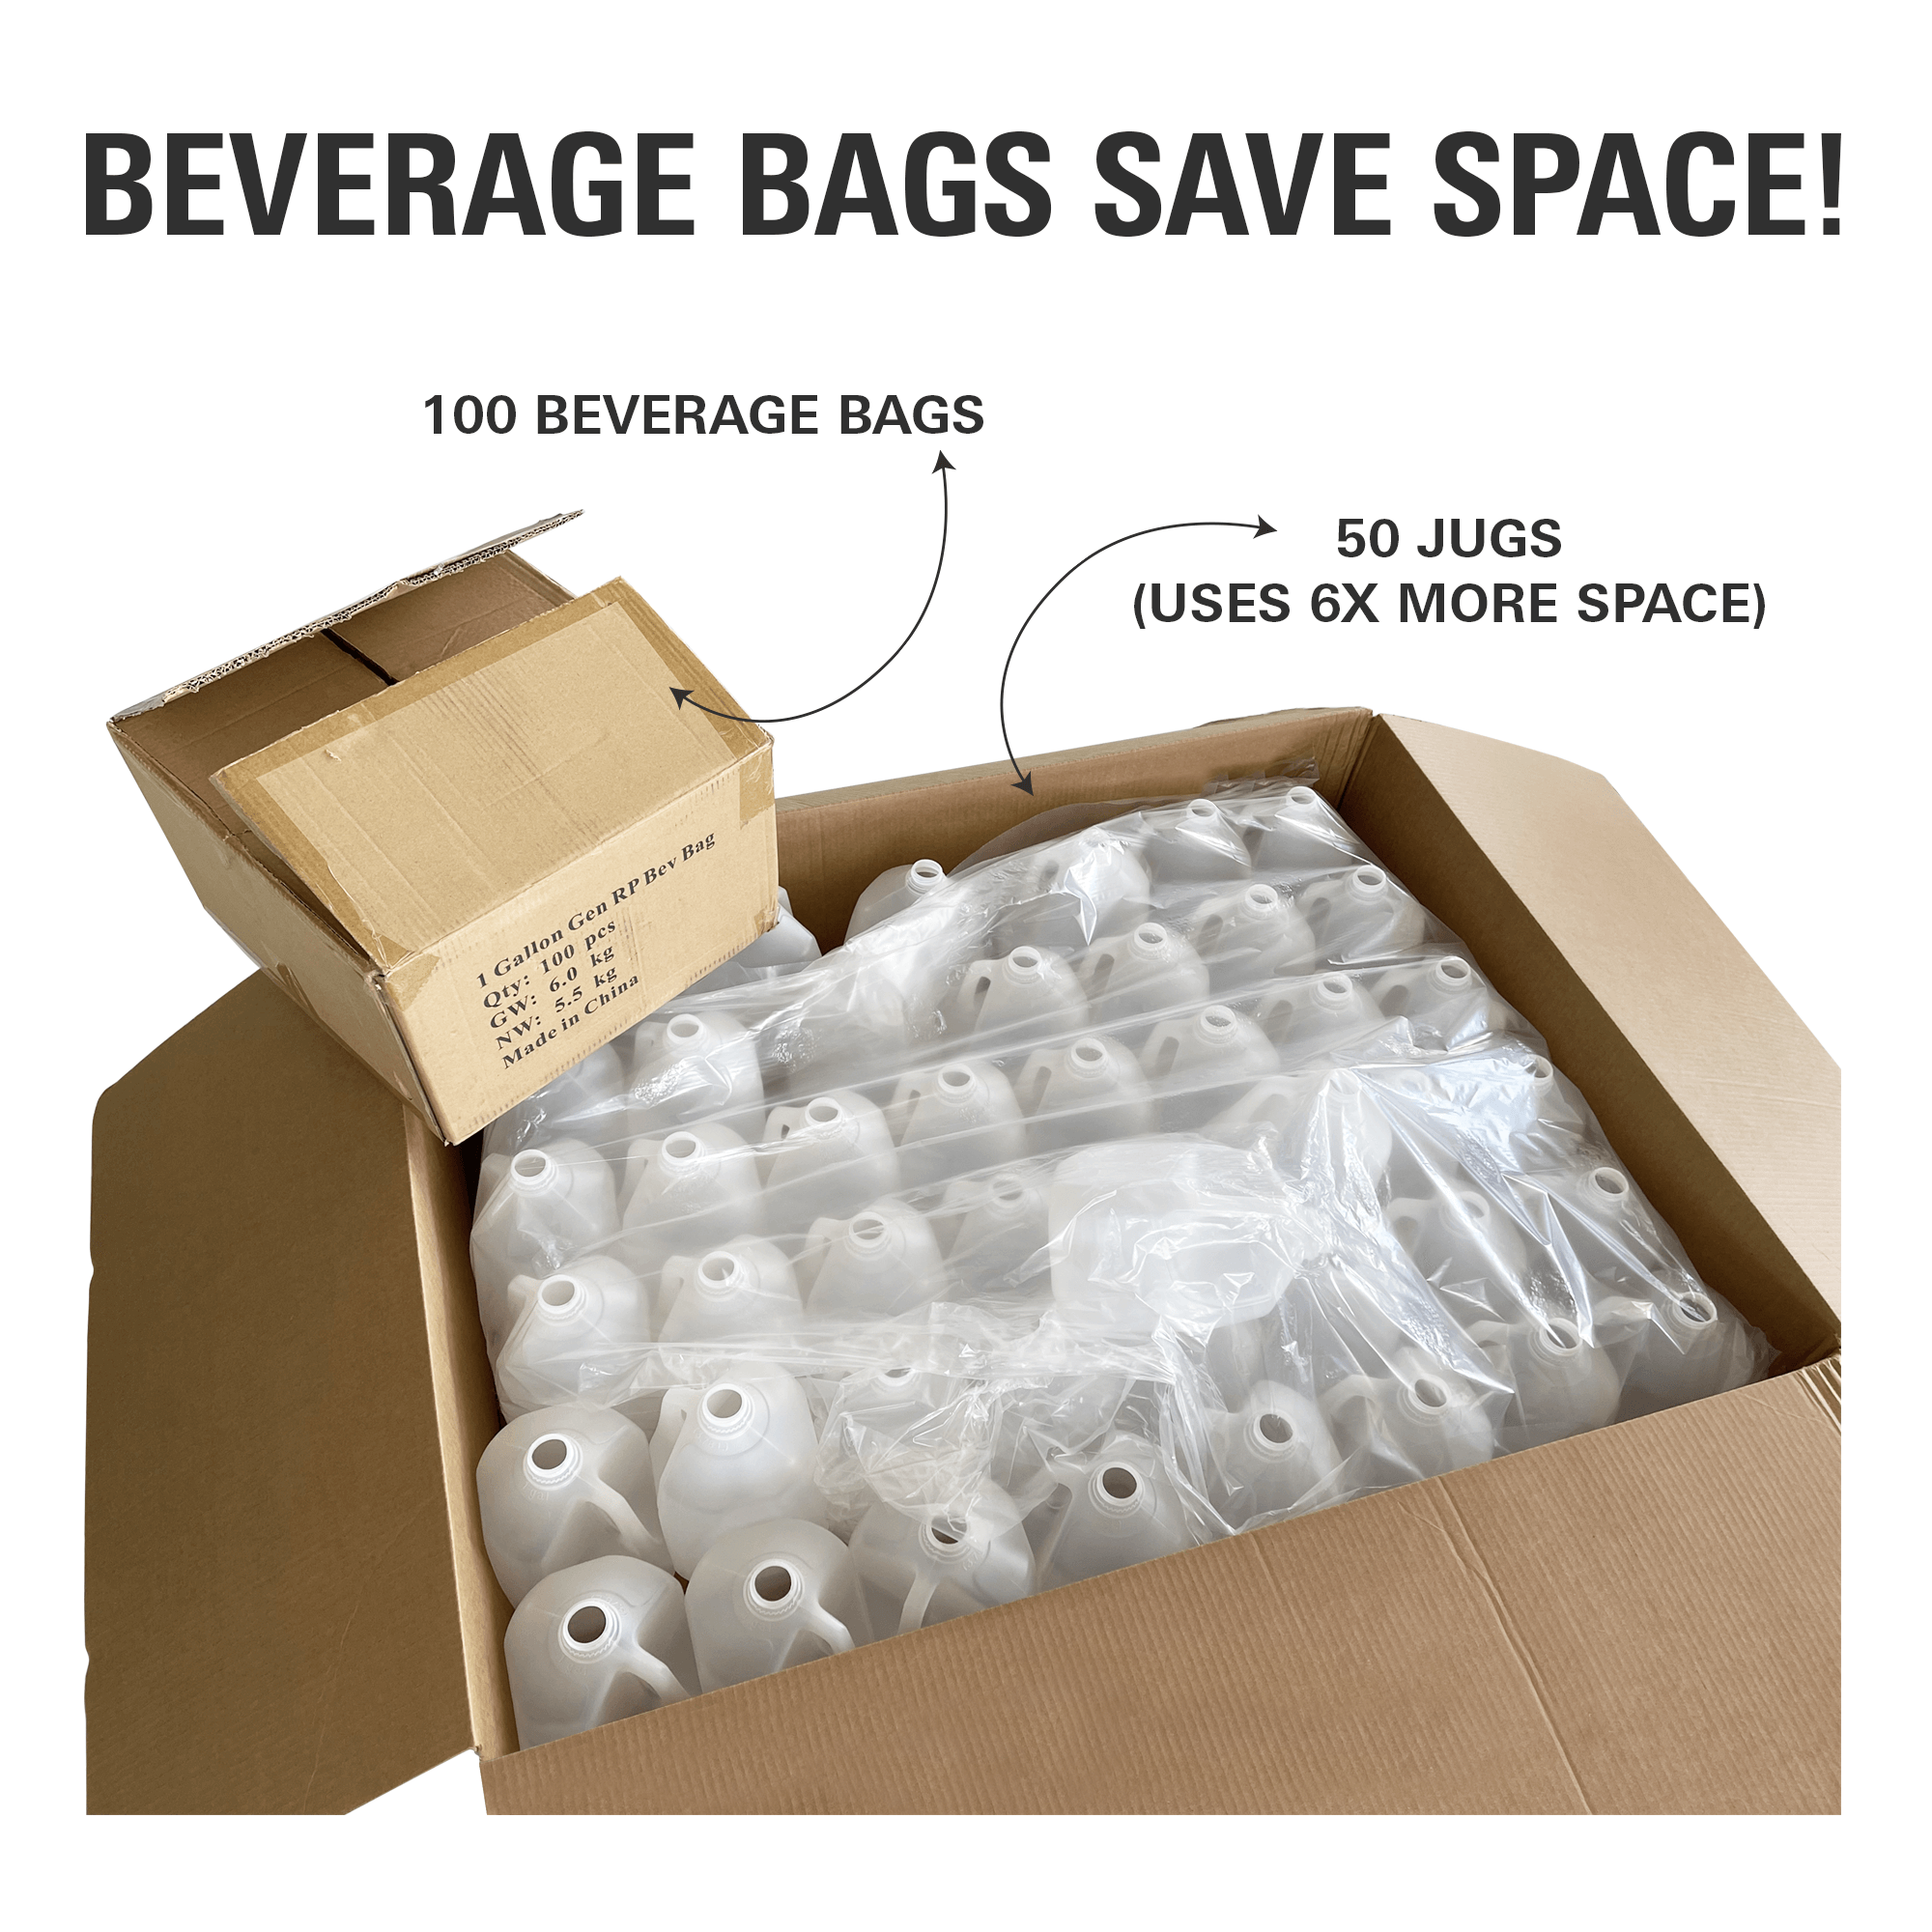 beverage bags save space